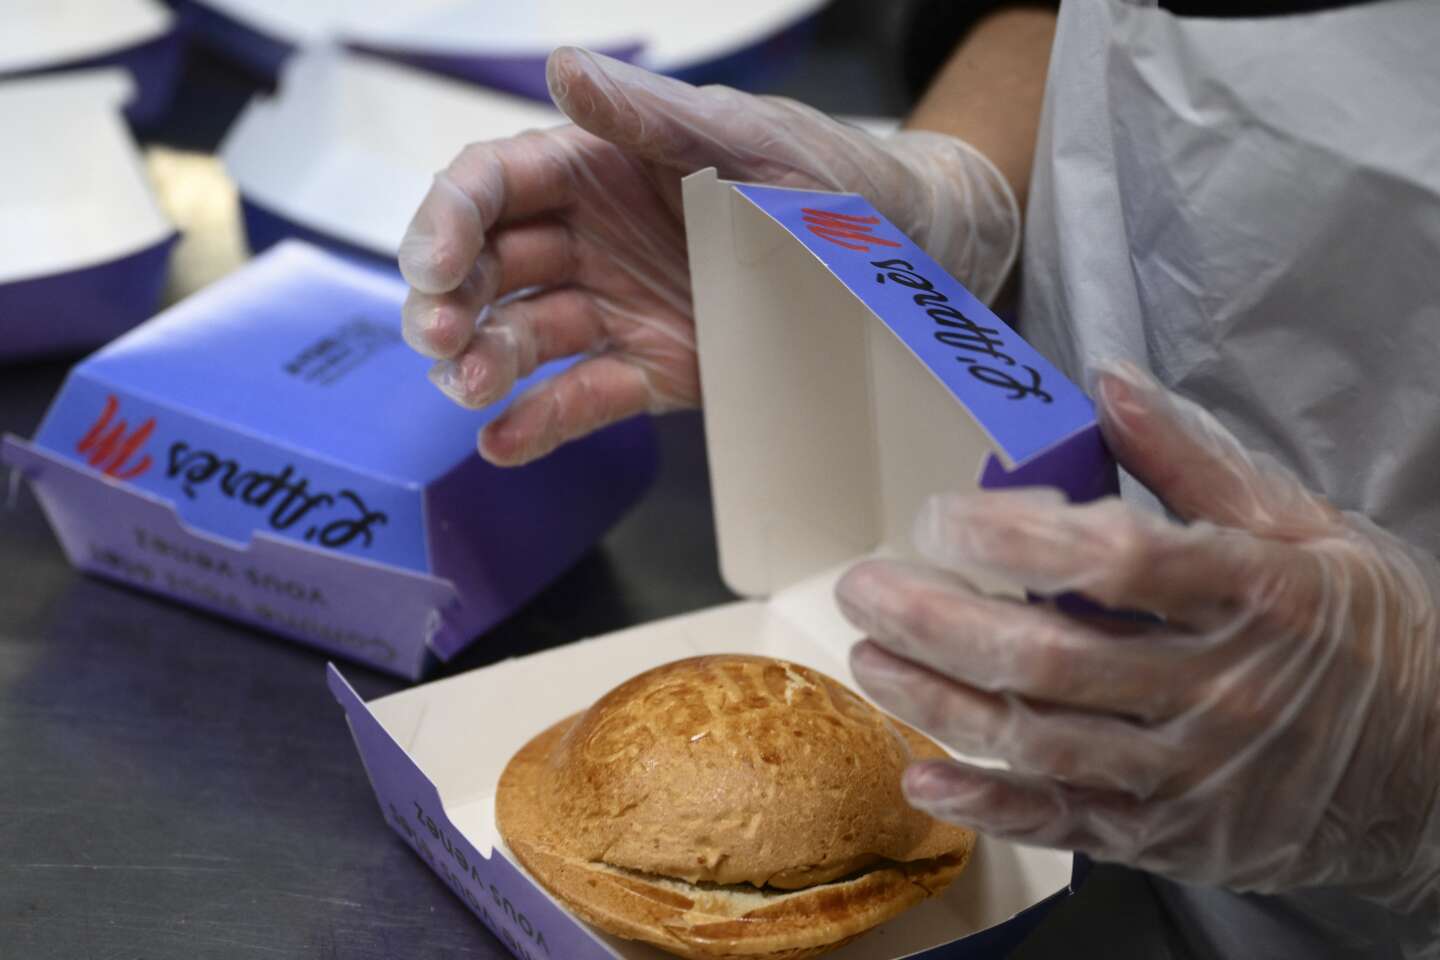 Ce que les fast-foods disent de la France